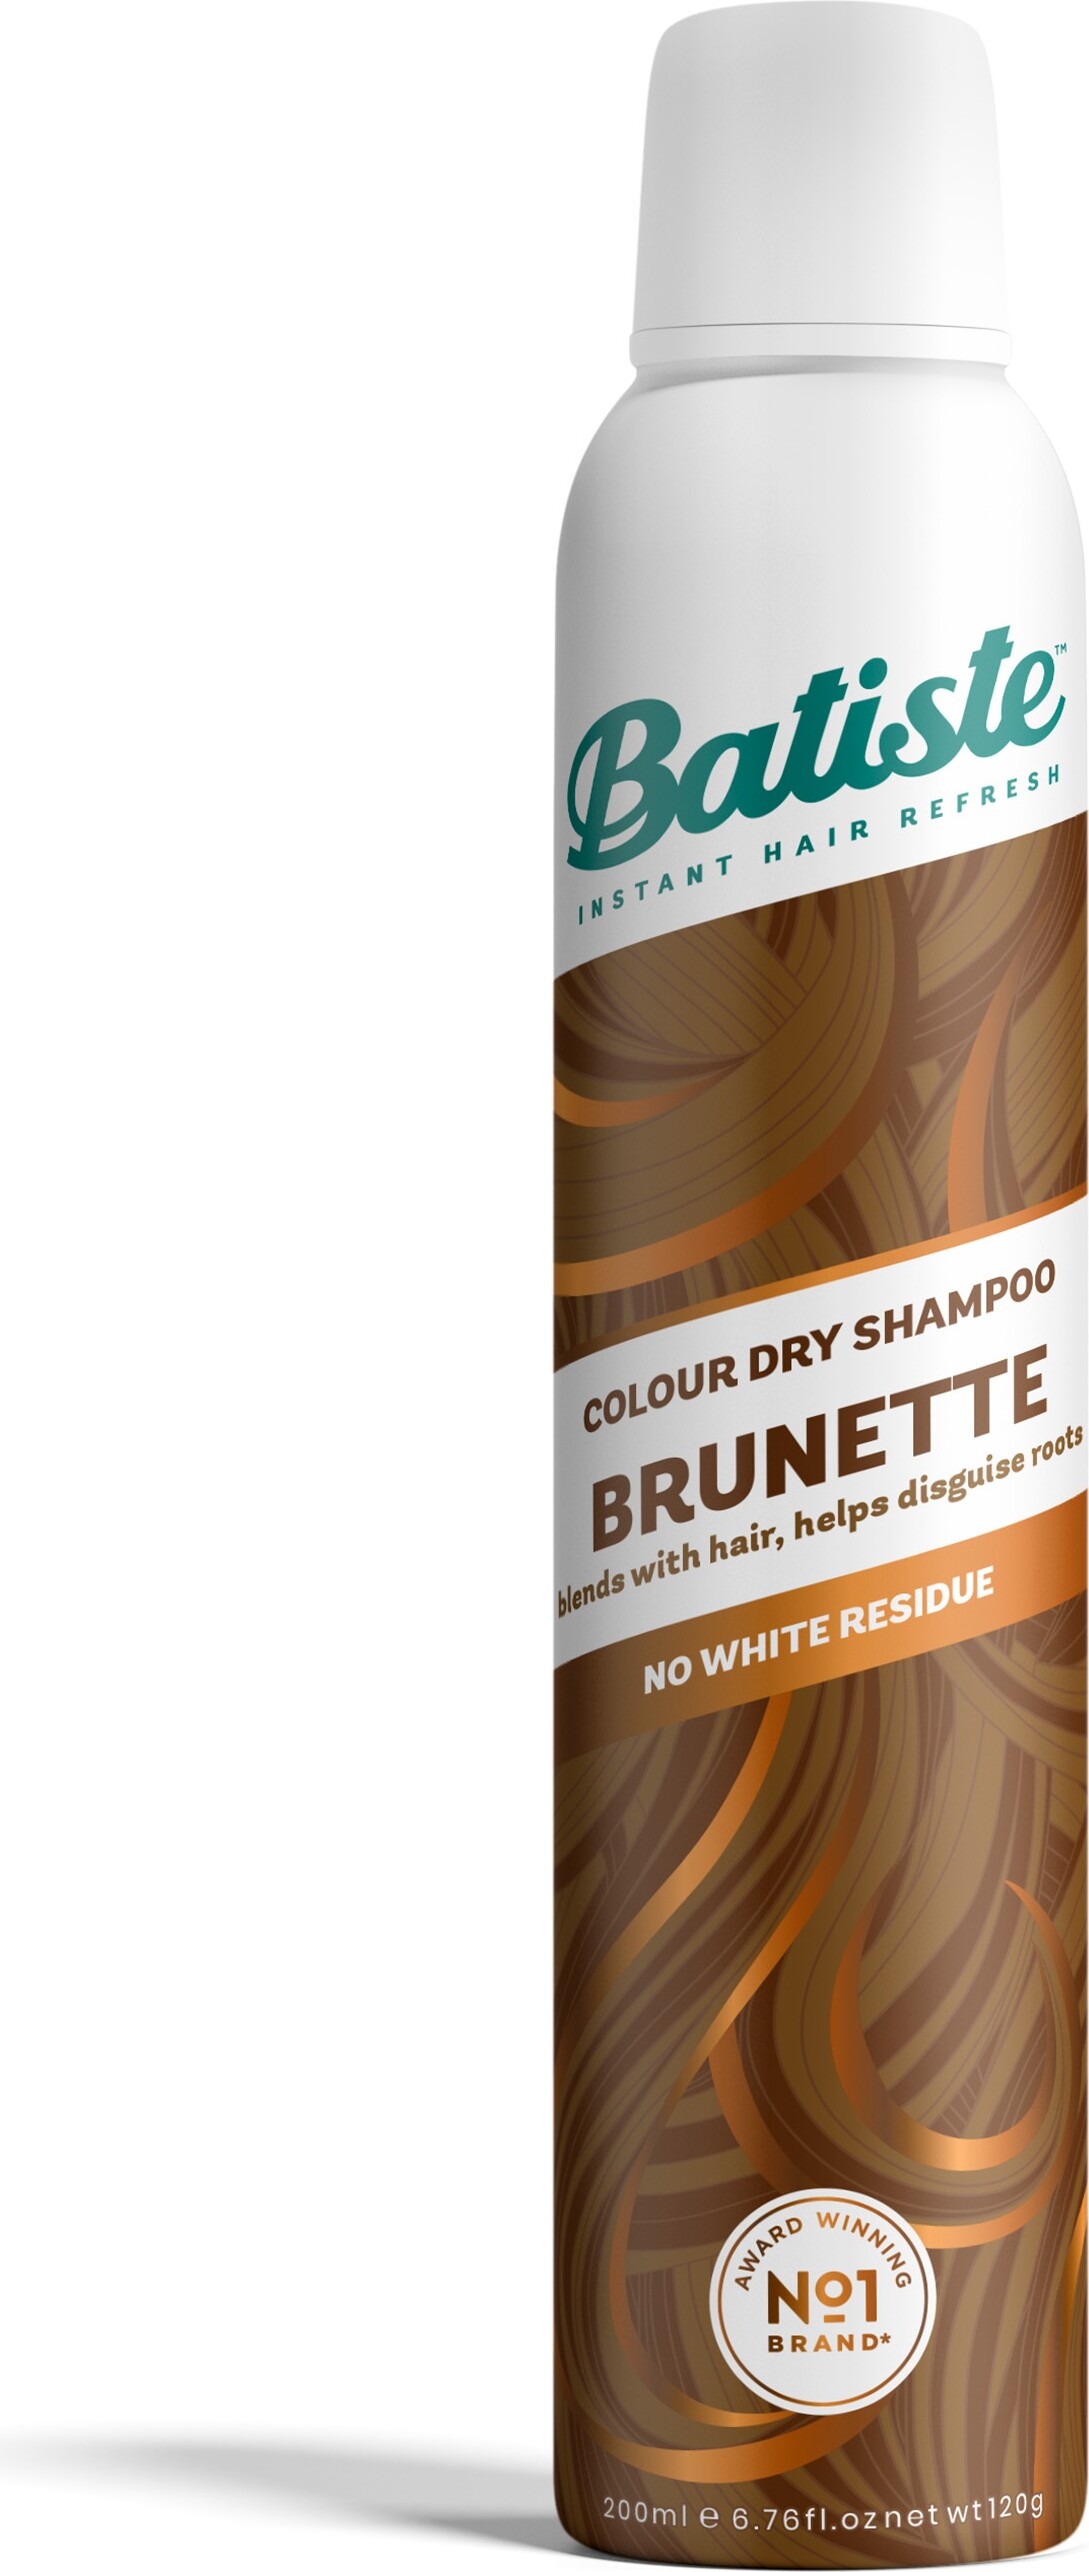 Billede af Batiste - Colour Dry Shampoo - Brunette 200 Ml hos Gucca.dk